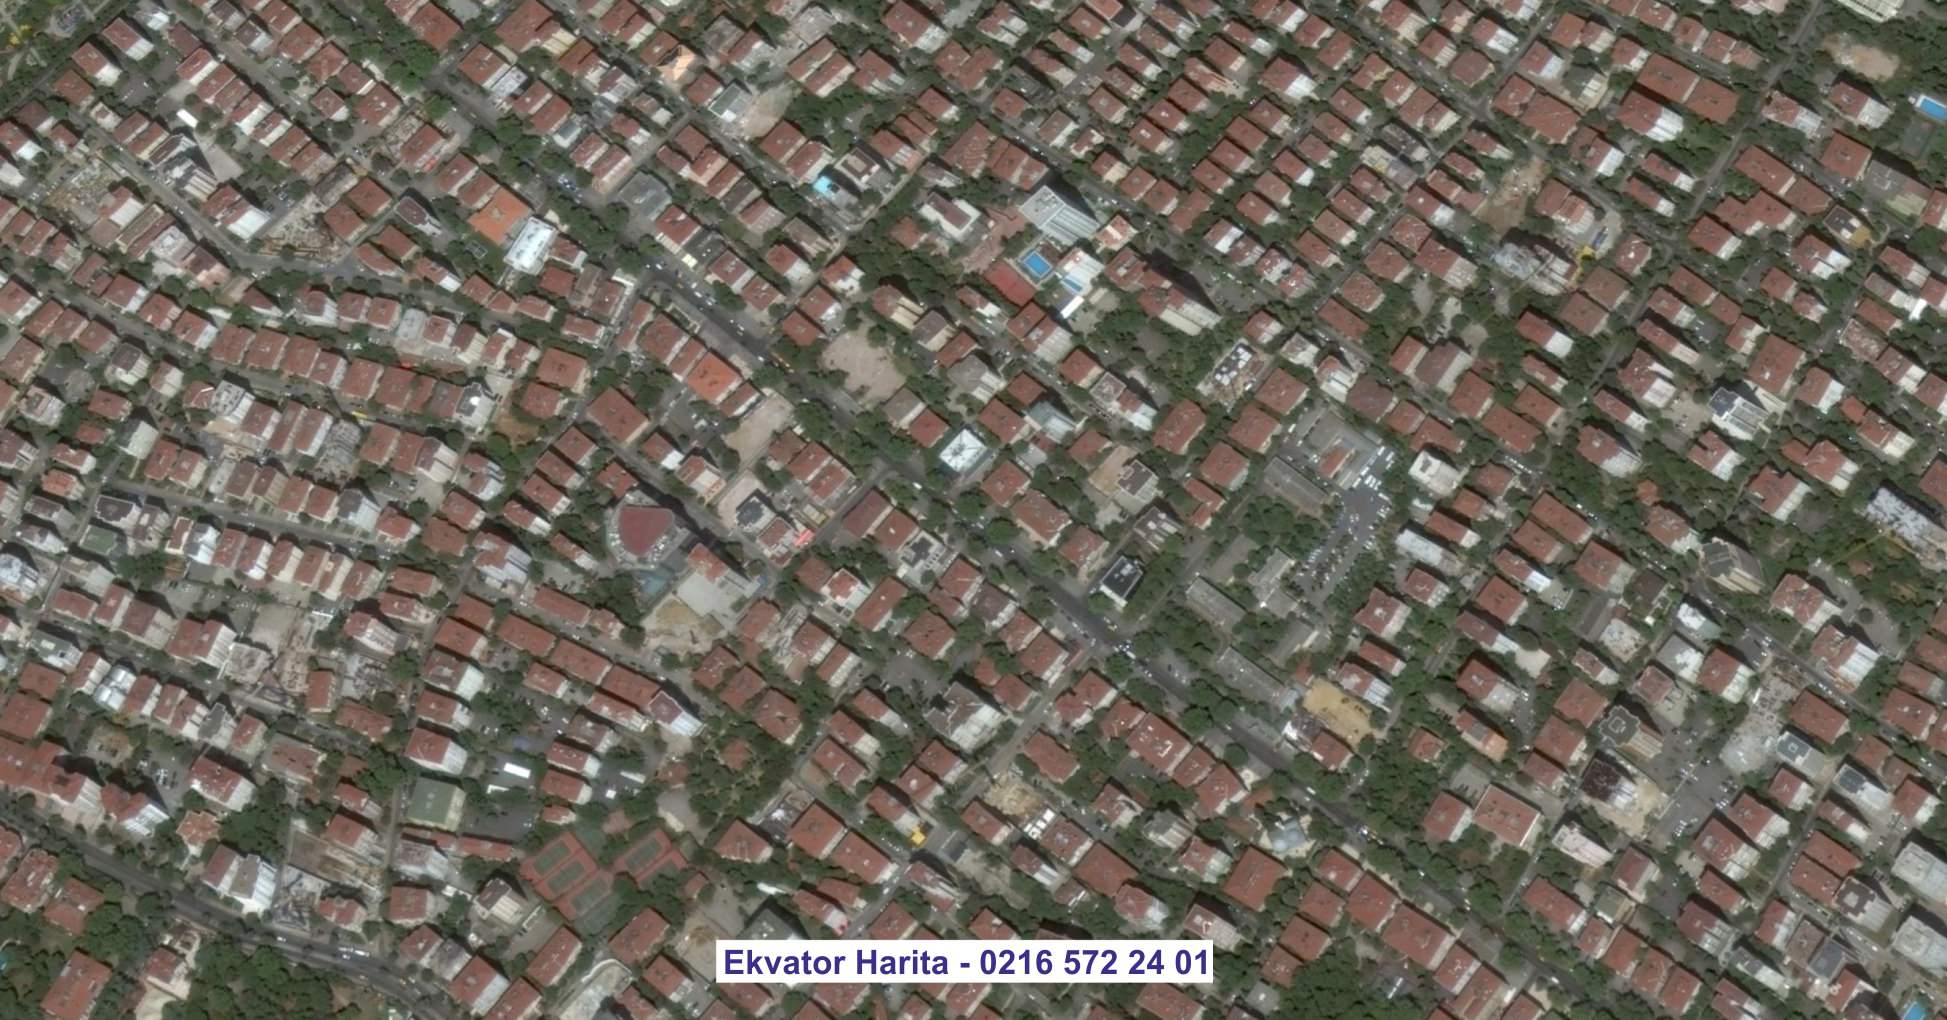 Diyarbakır Uydu Görüntüsü Örnek Fotoğrafı